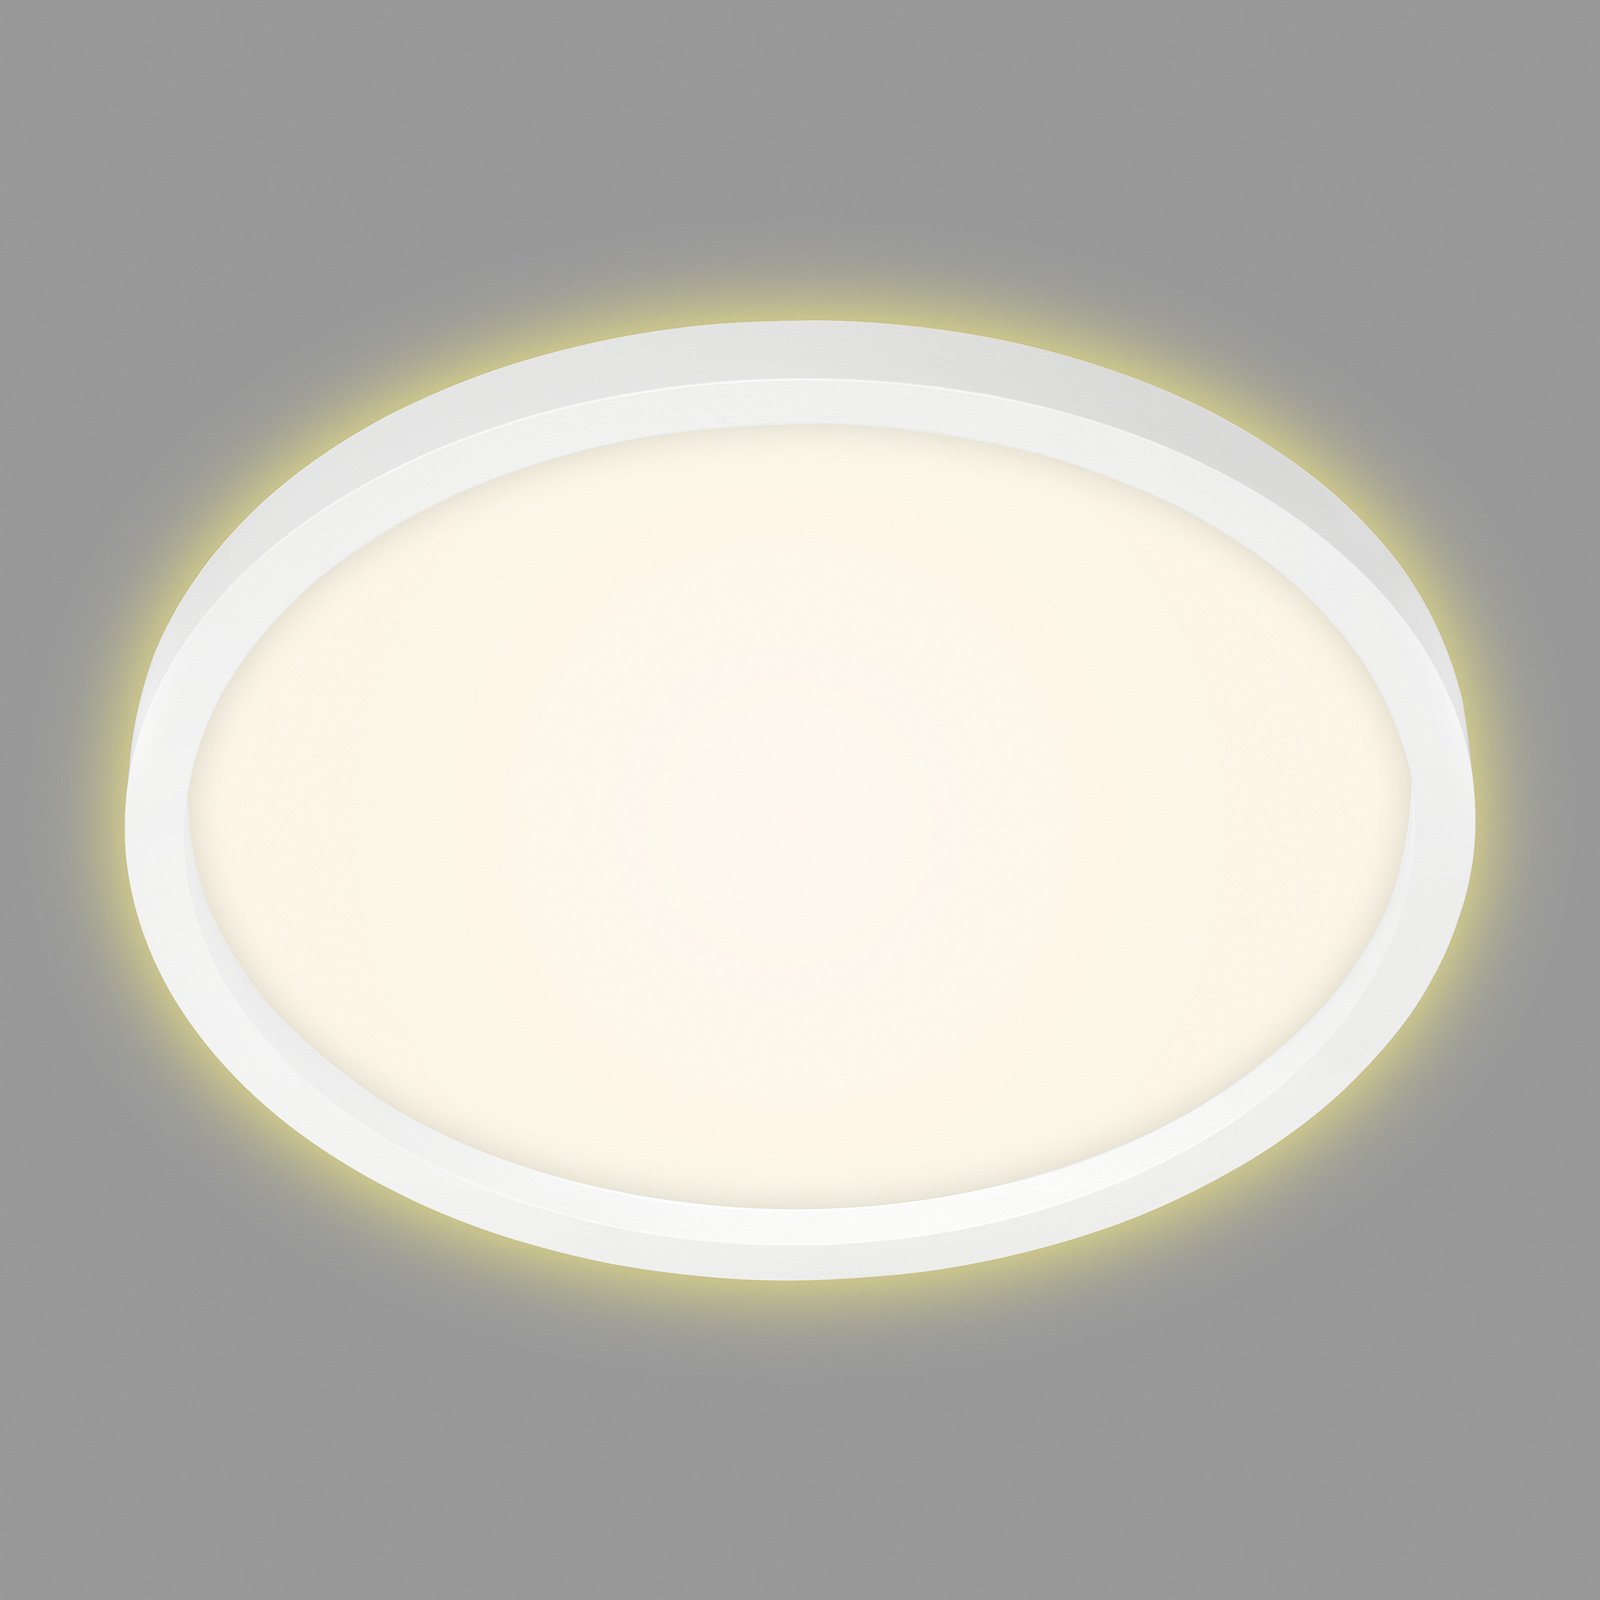 7363 LED ceiling lamp, Ø 42 cm, white